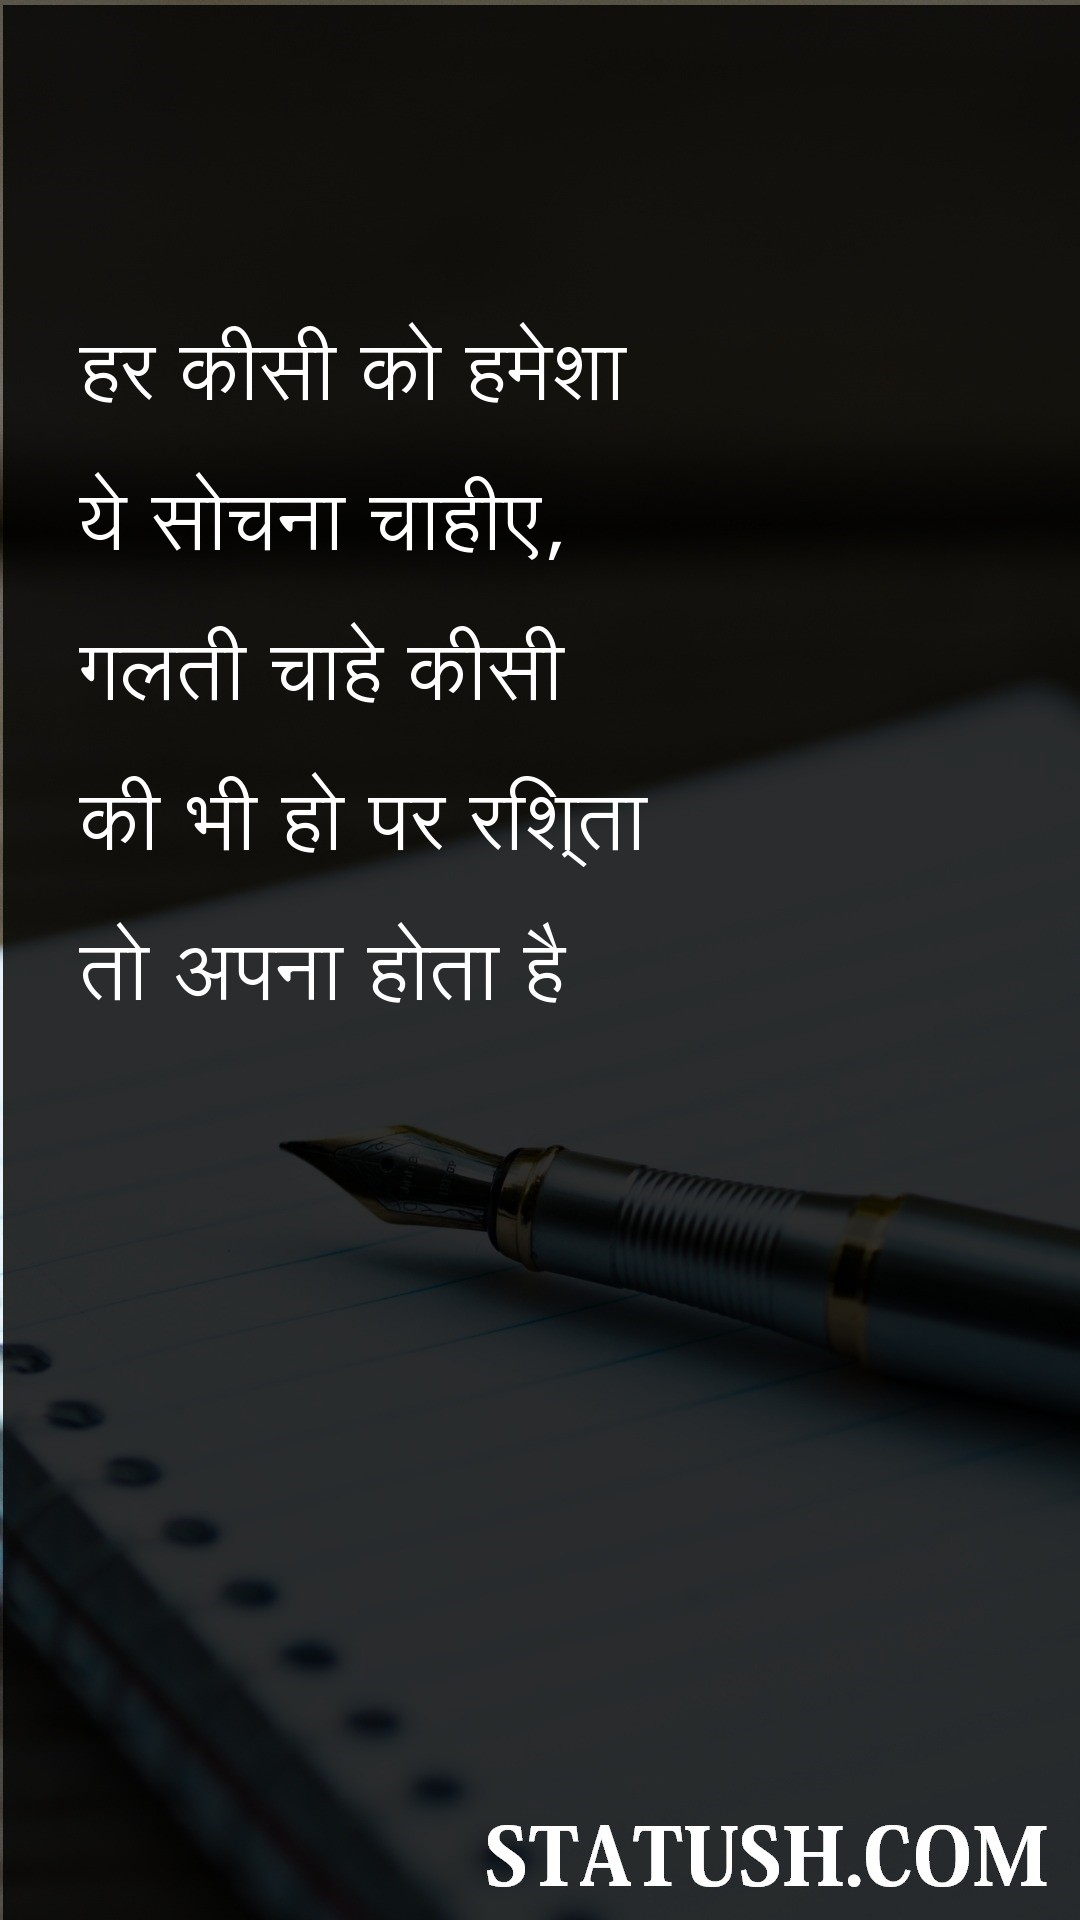 Everyone should always think - Hindi Quotes at statush.com